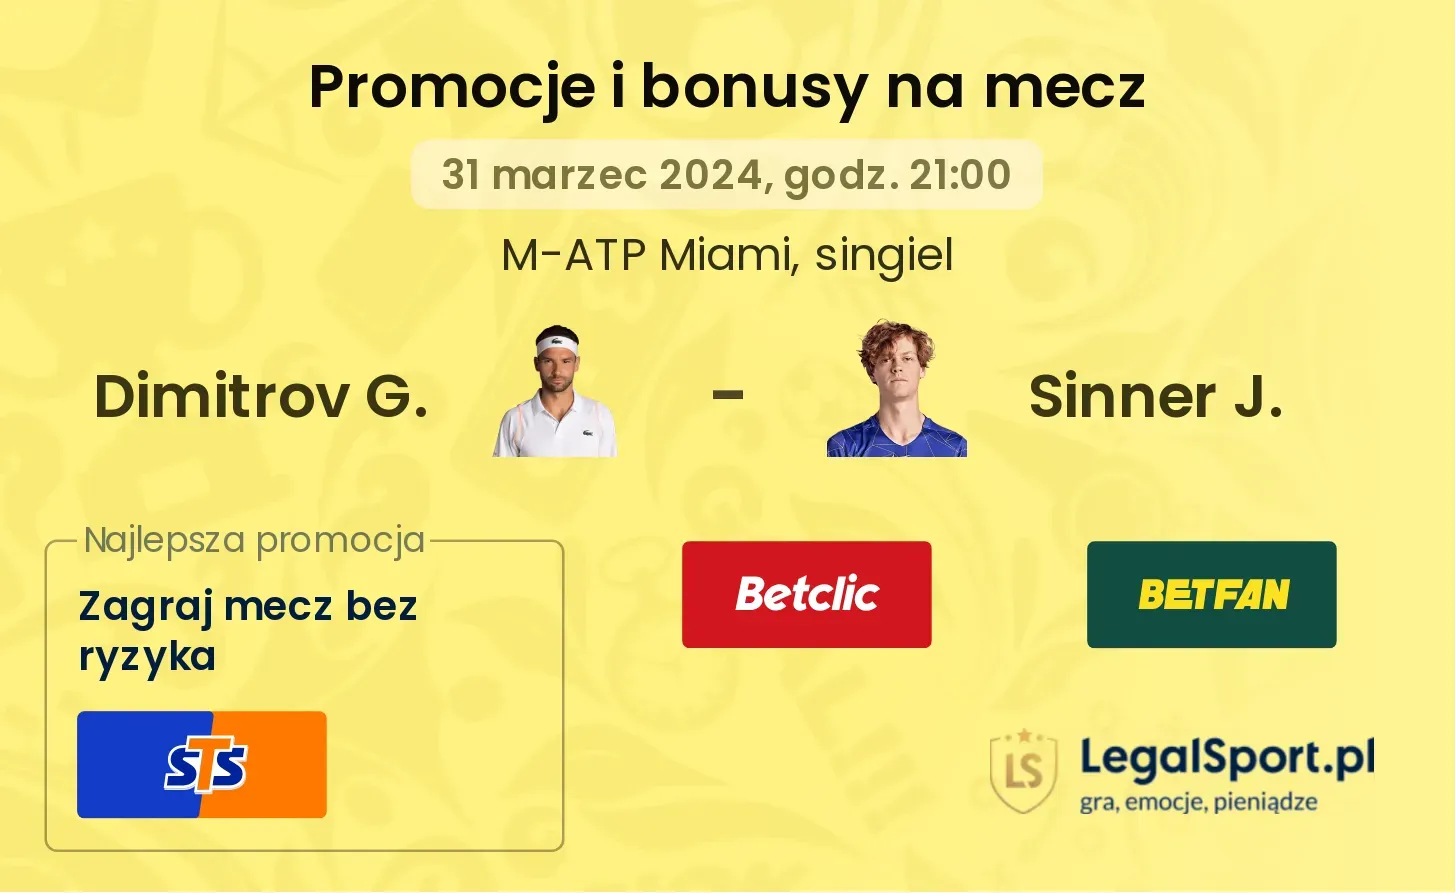 Dimitrov G. - Sinner J. promocje bonusy na mecz